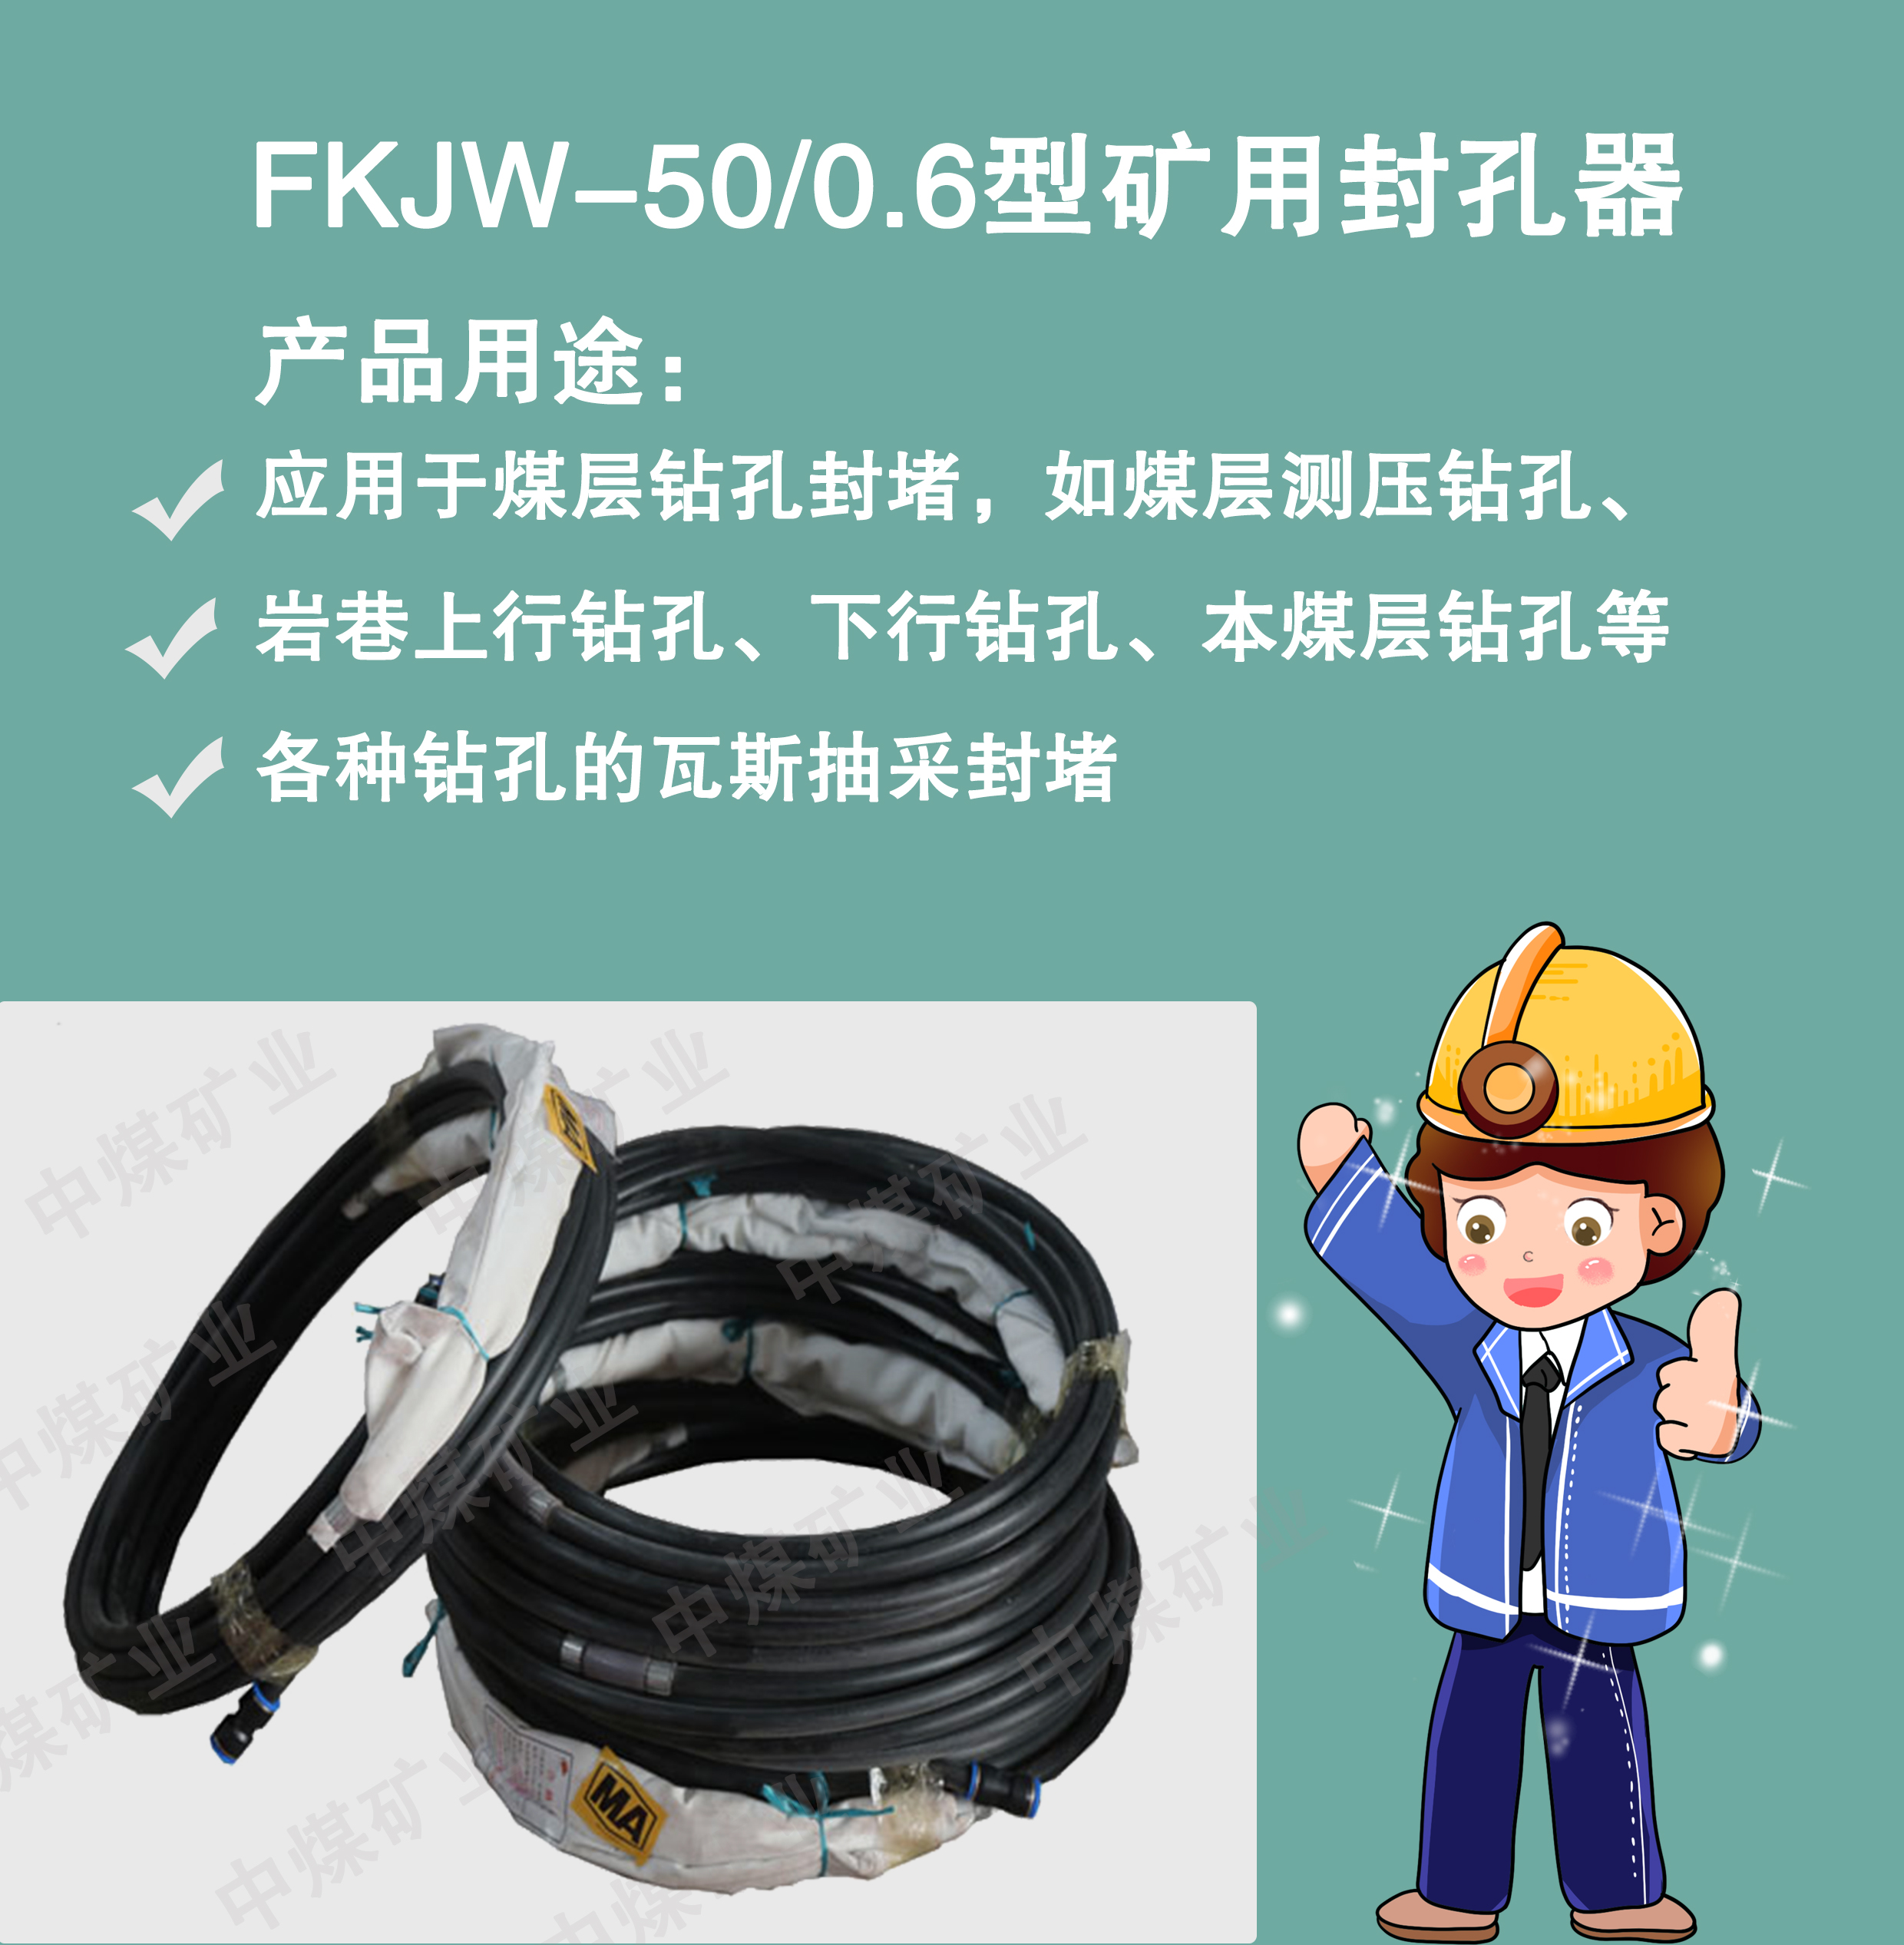 FKJW-50/0.6型矿用封孔FKJW-50/0.6型矿用封孔 中煤矿业